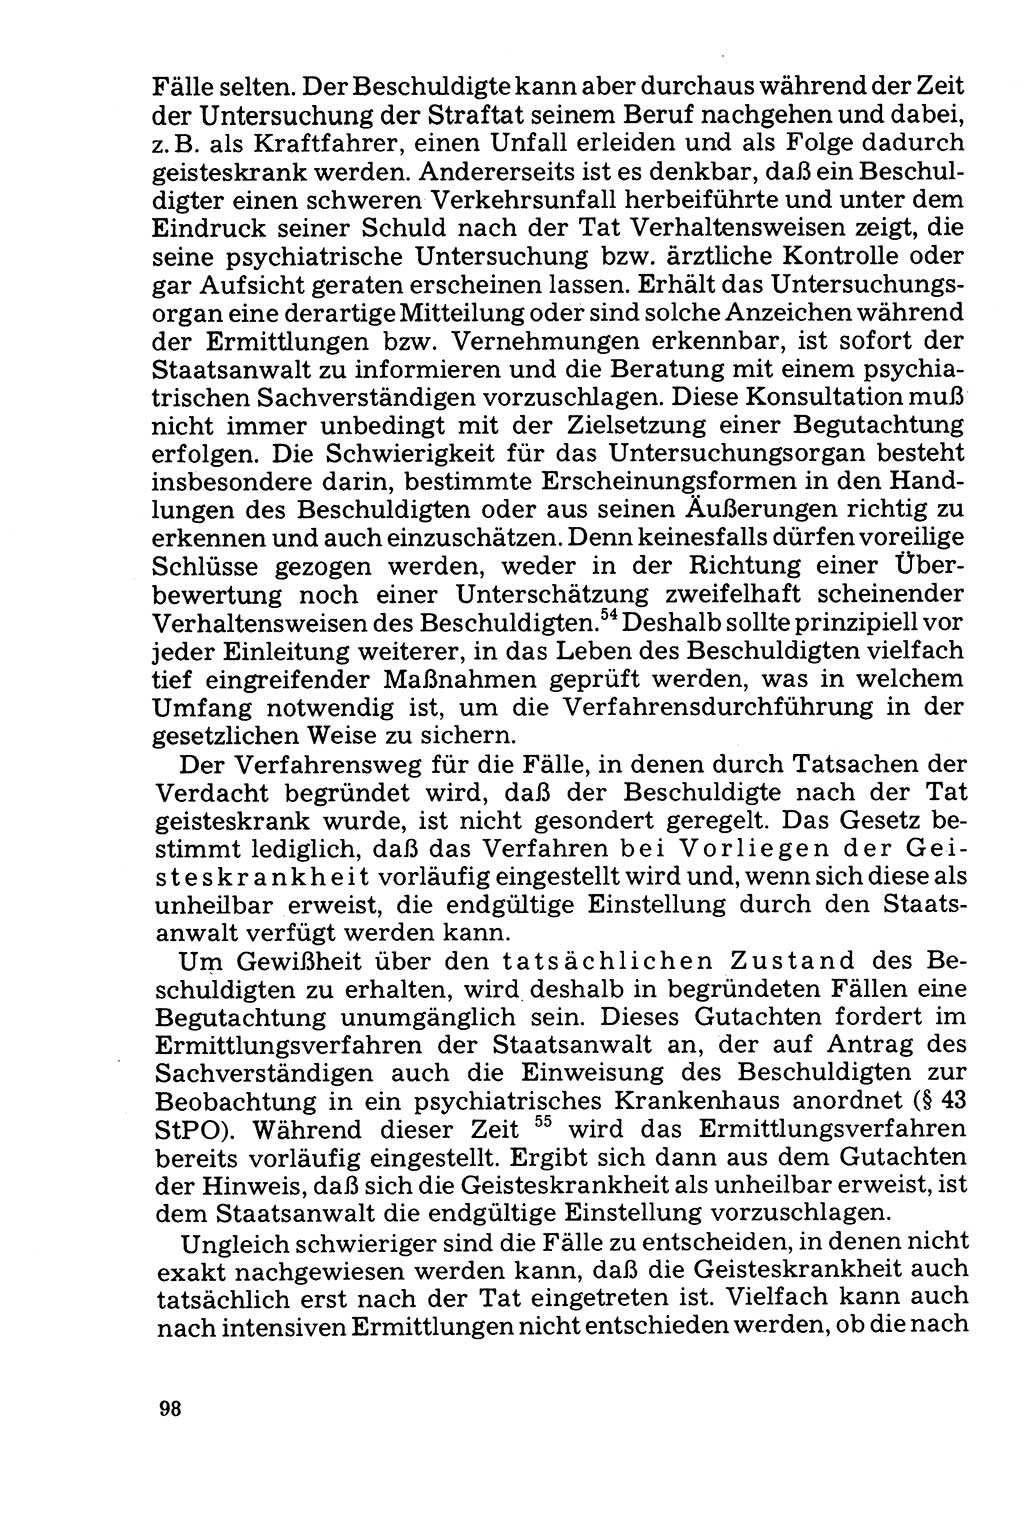 Der Abschluß des Ermittlungsverfahrens [Deutsche Demokratische Republik (DDR)] 1978, Seite 98 (Abschl. EV DDR 1978, S. 98)